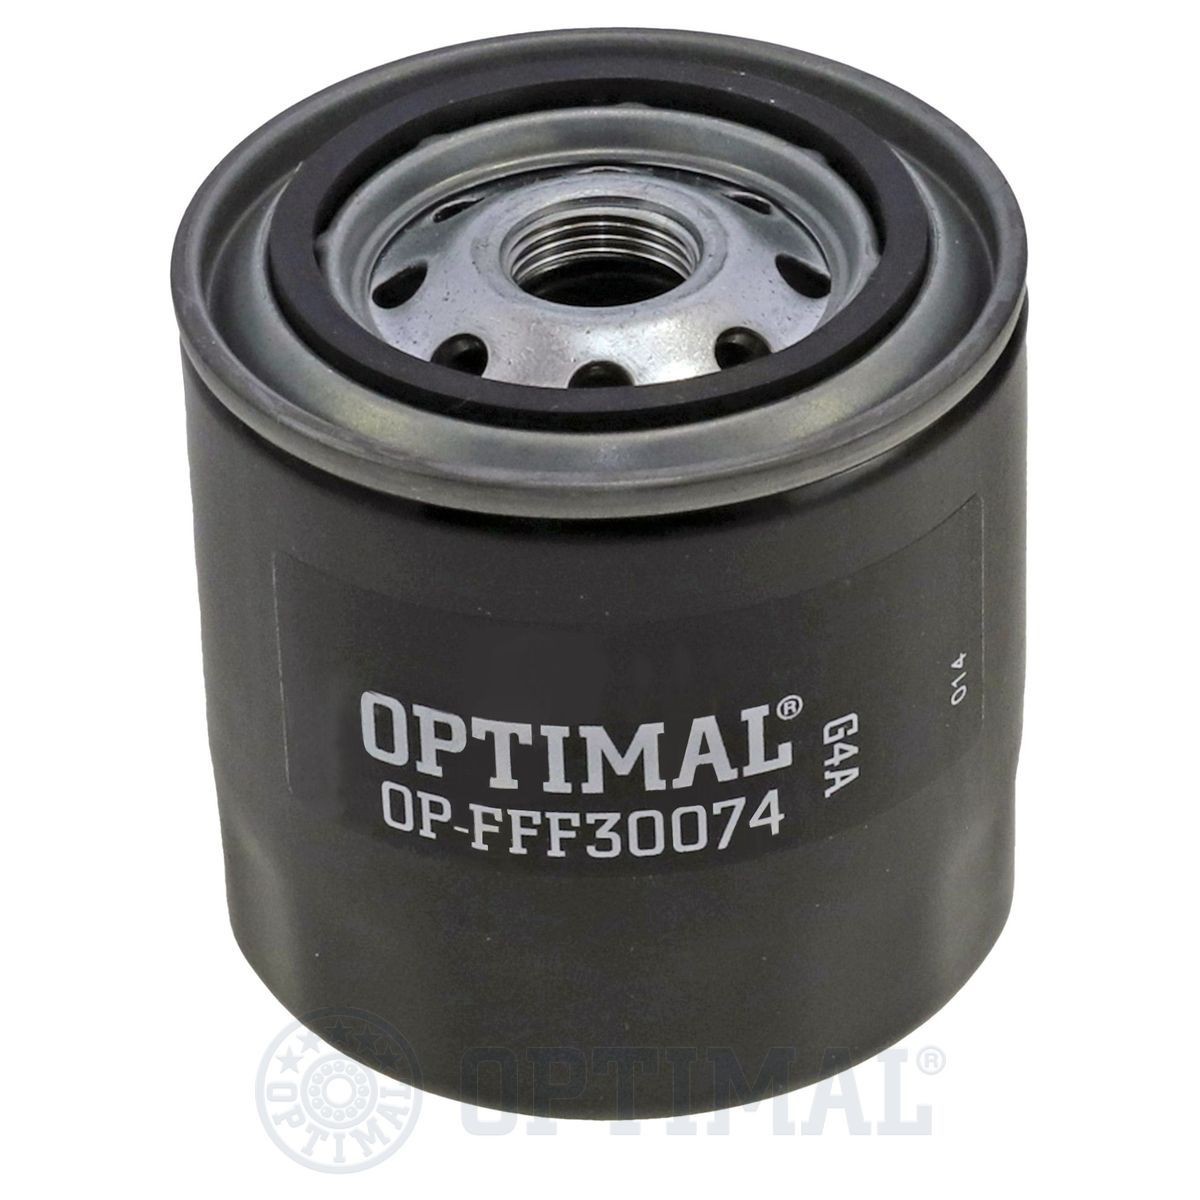 OPTIMAL OP-FFF30074 Fuel filter 6003116220